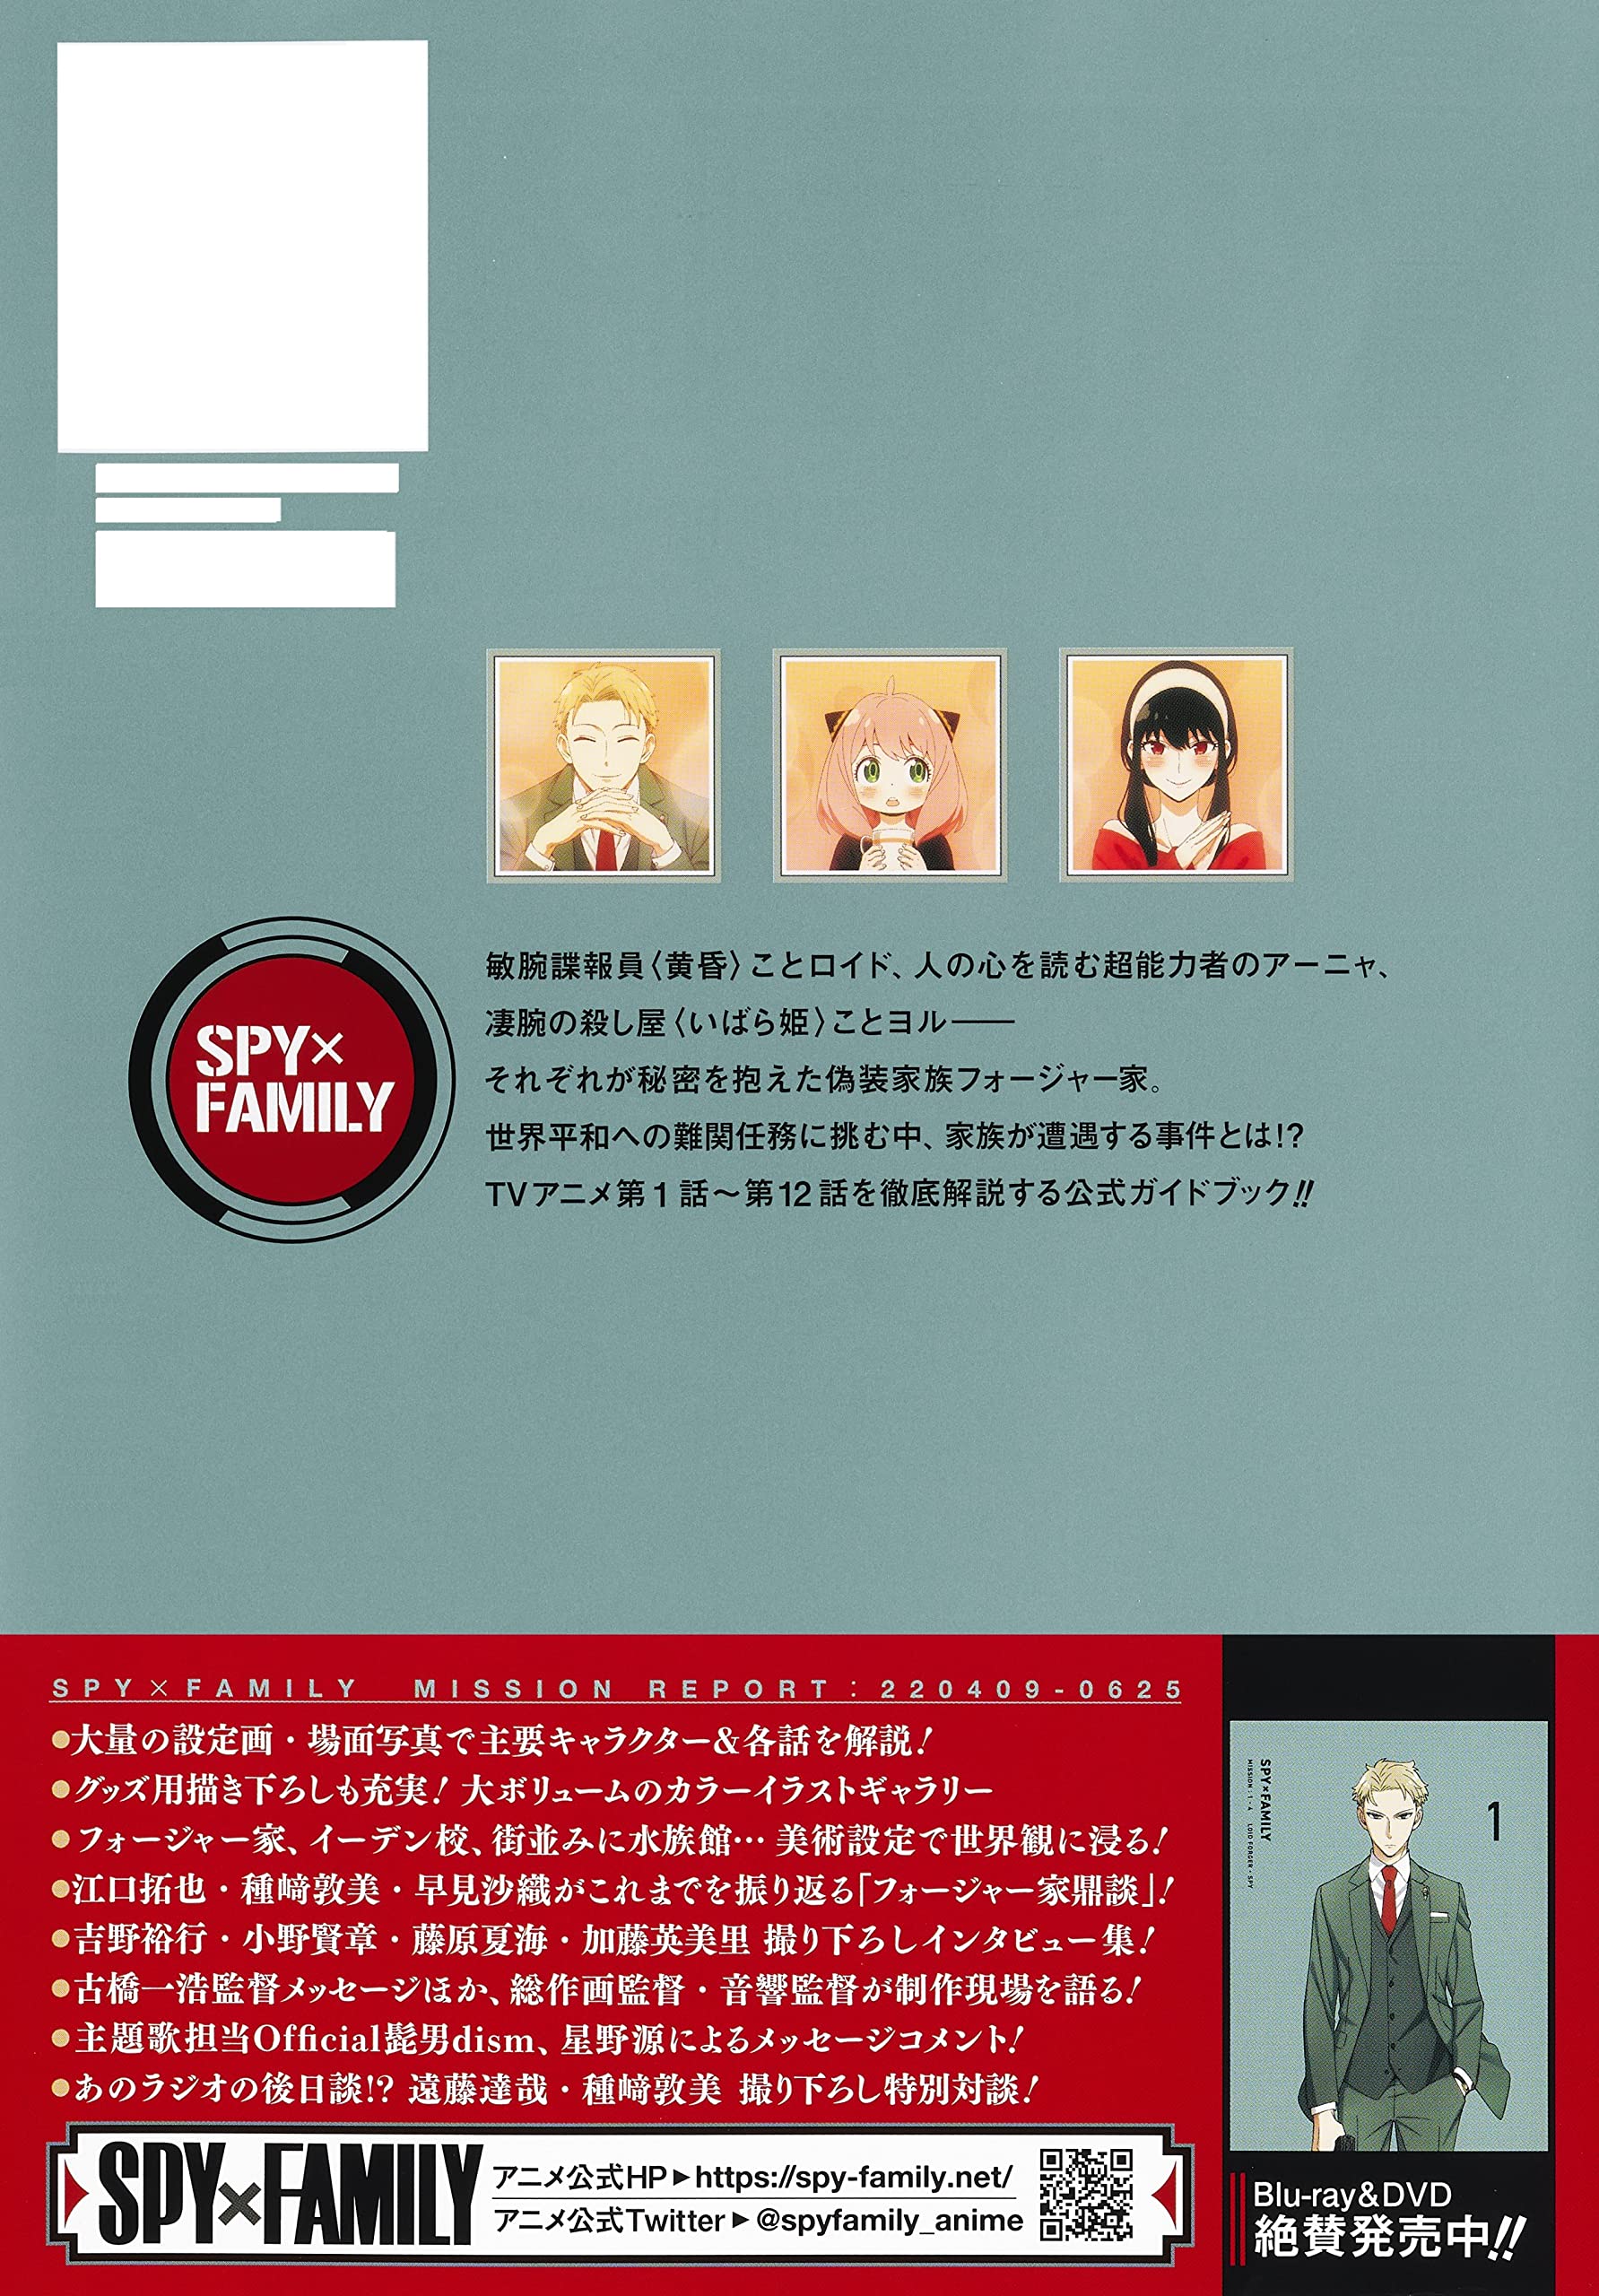 TV аниме [SPY×FAMILY] официальный путеводитель MISSION REPORT:220409-0625 ( коллекционное издание комиксы )